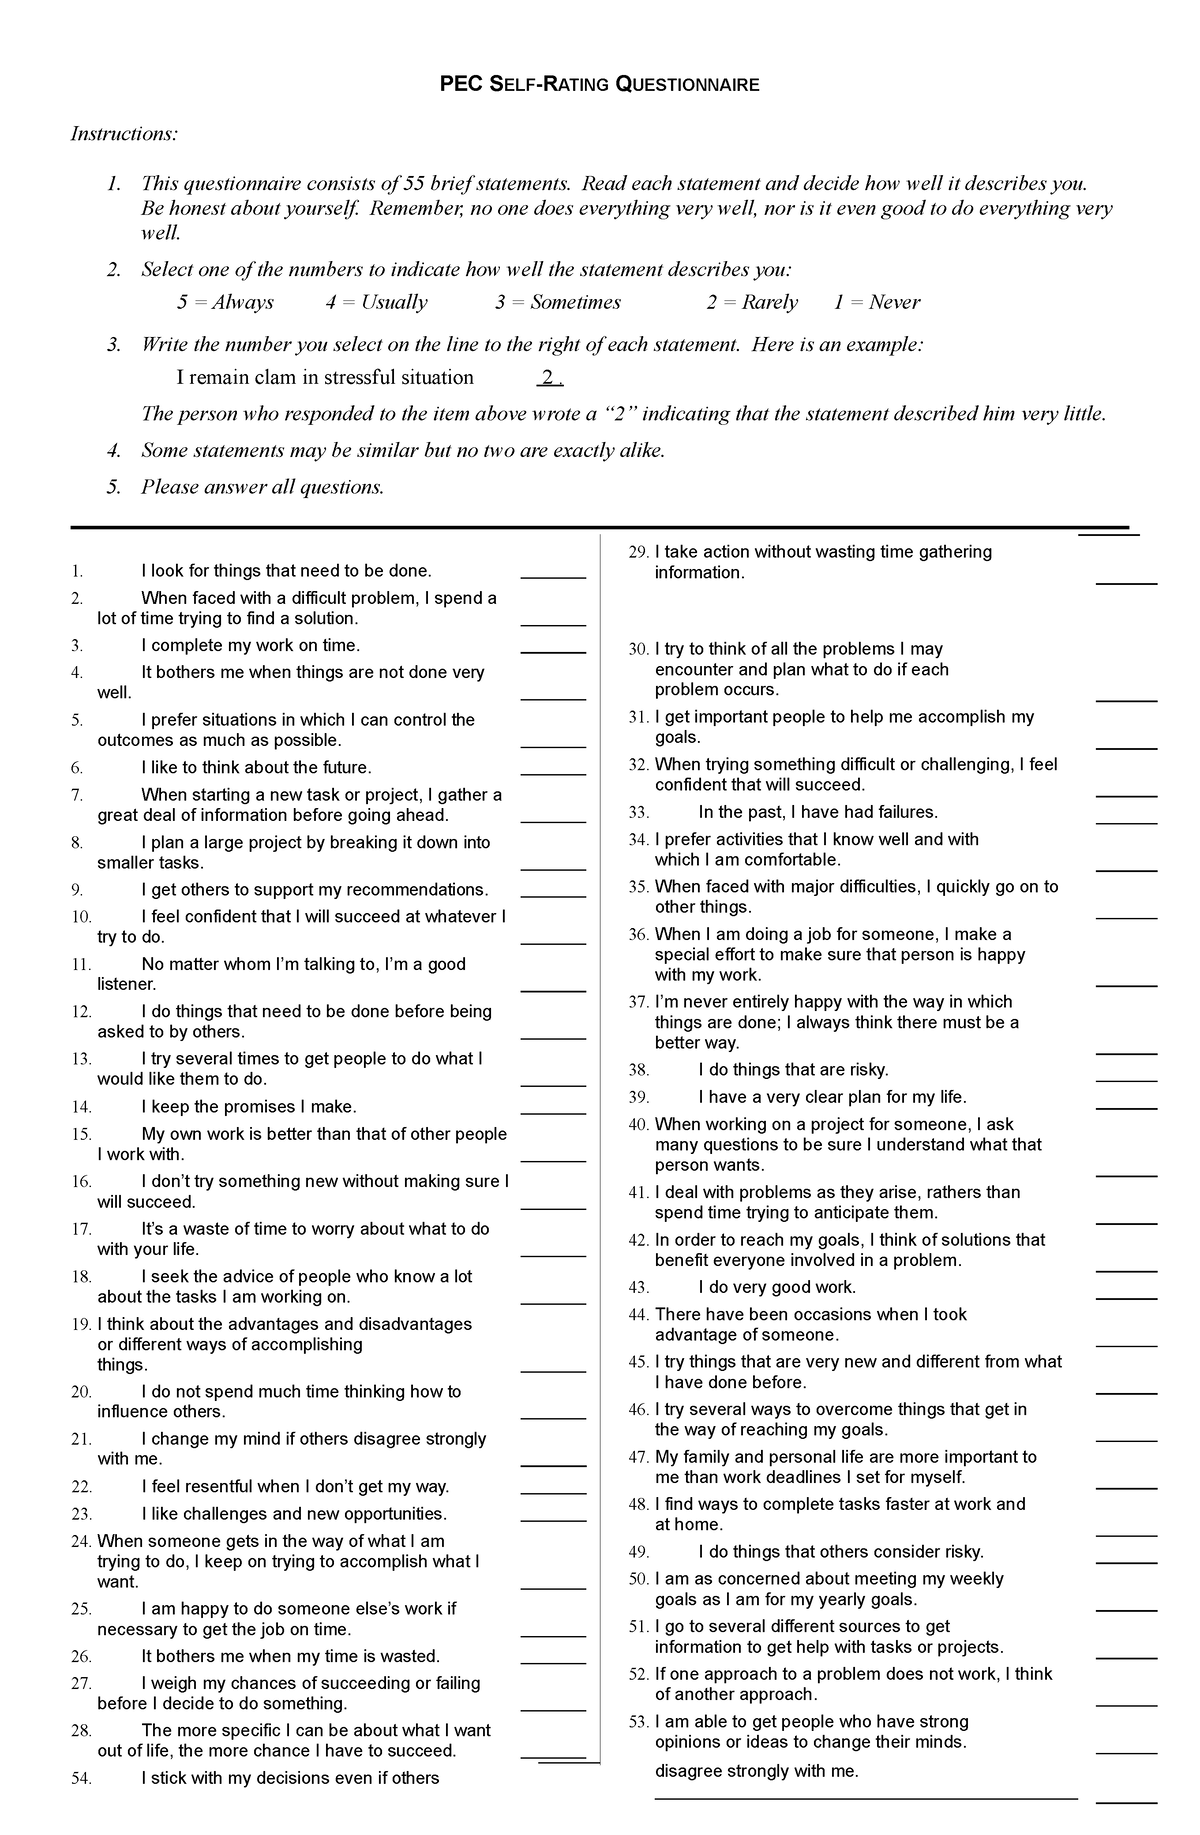 Pec questionnaire and score sheet 1 - PEC SELF-RATING QUESTIONNAIRE ...